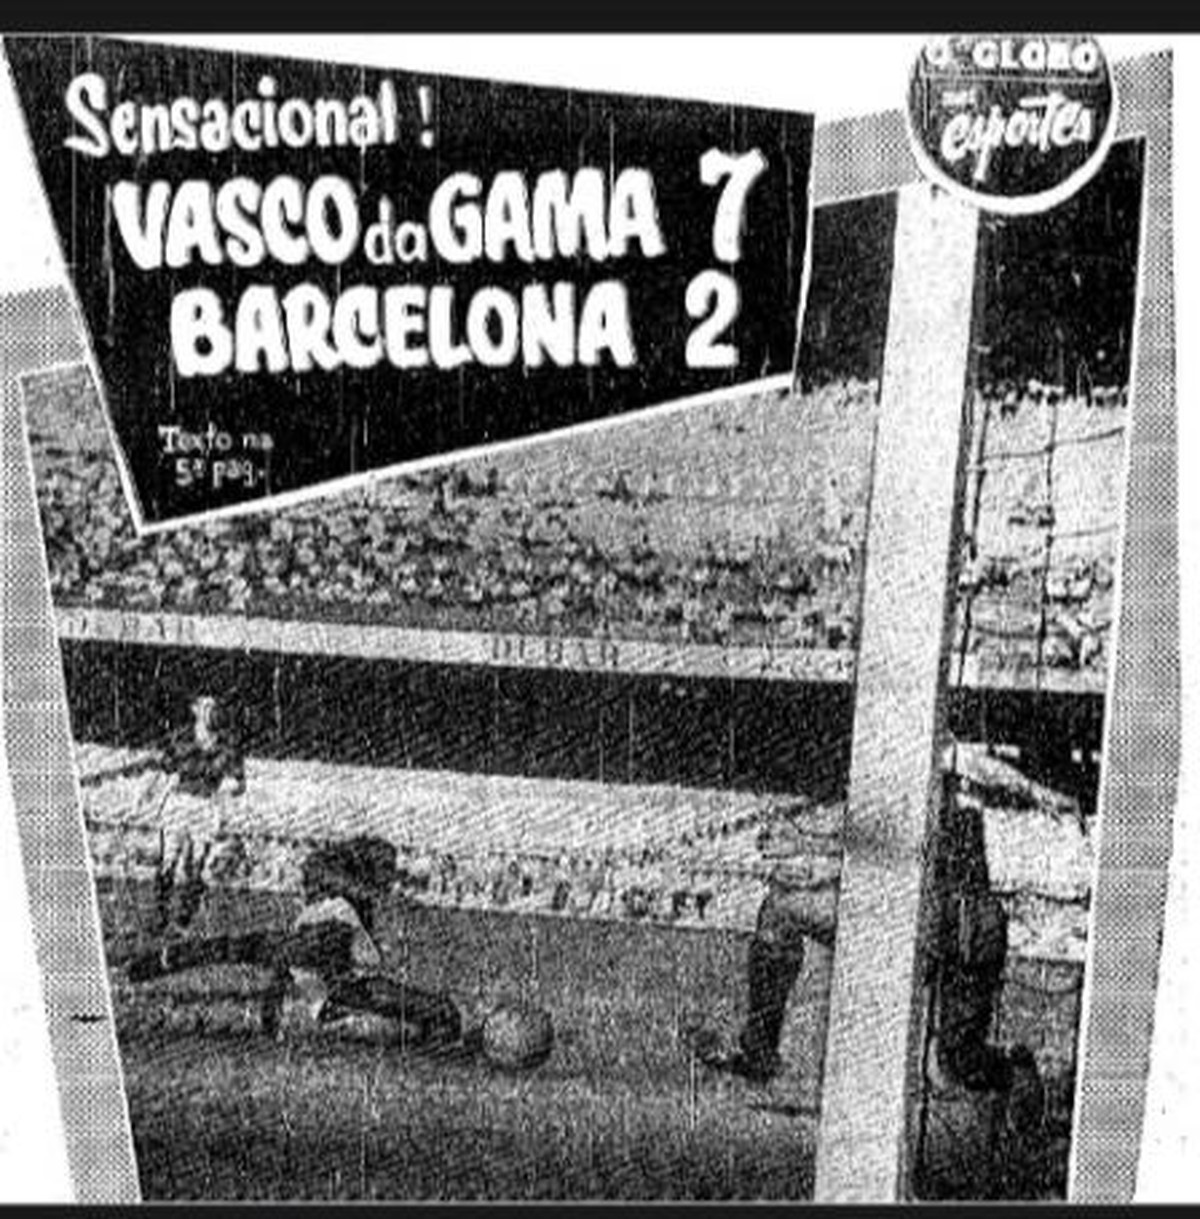 Vasco da Gama - Campeão Mundial de 1957